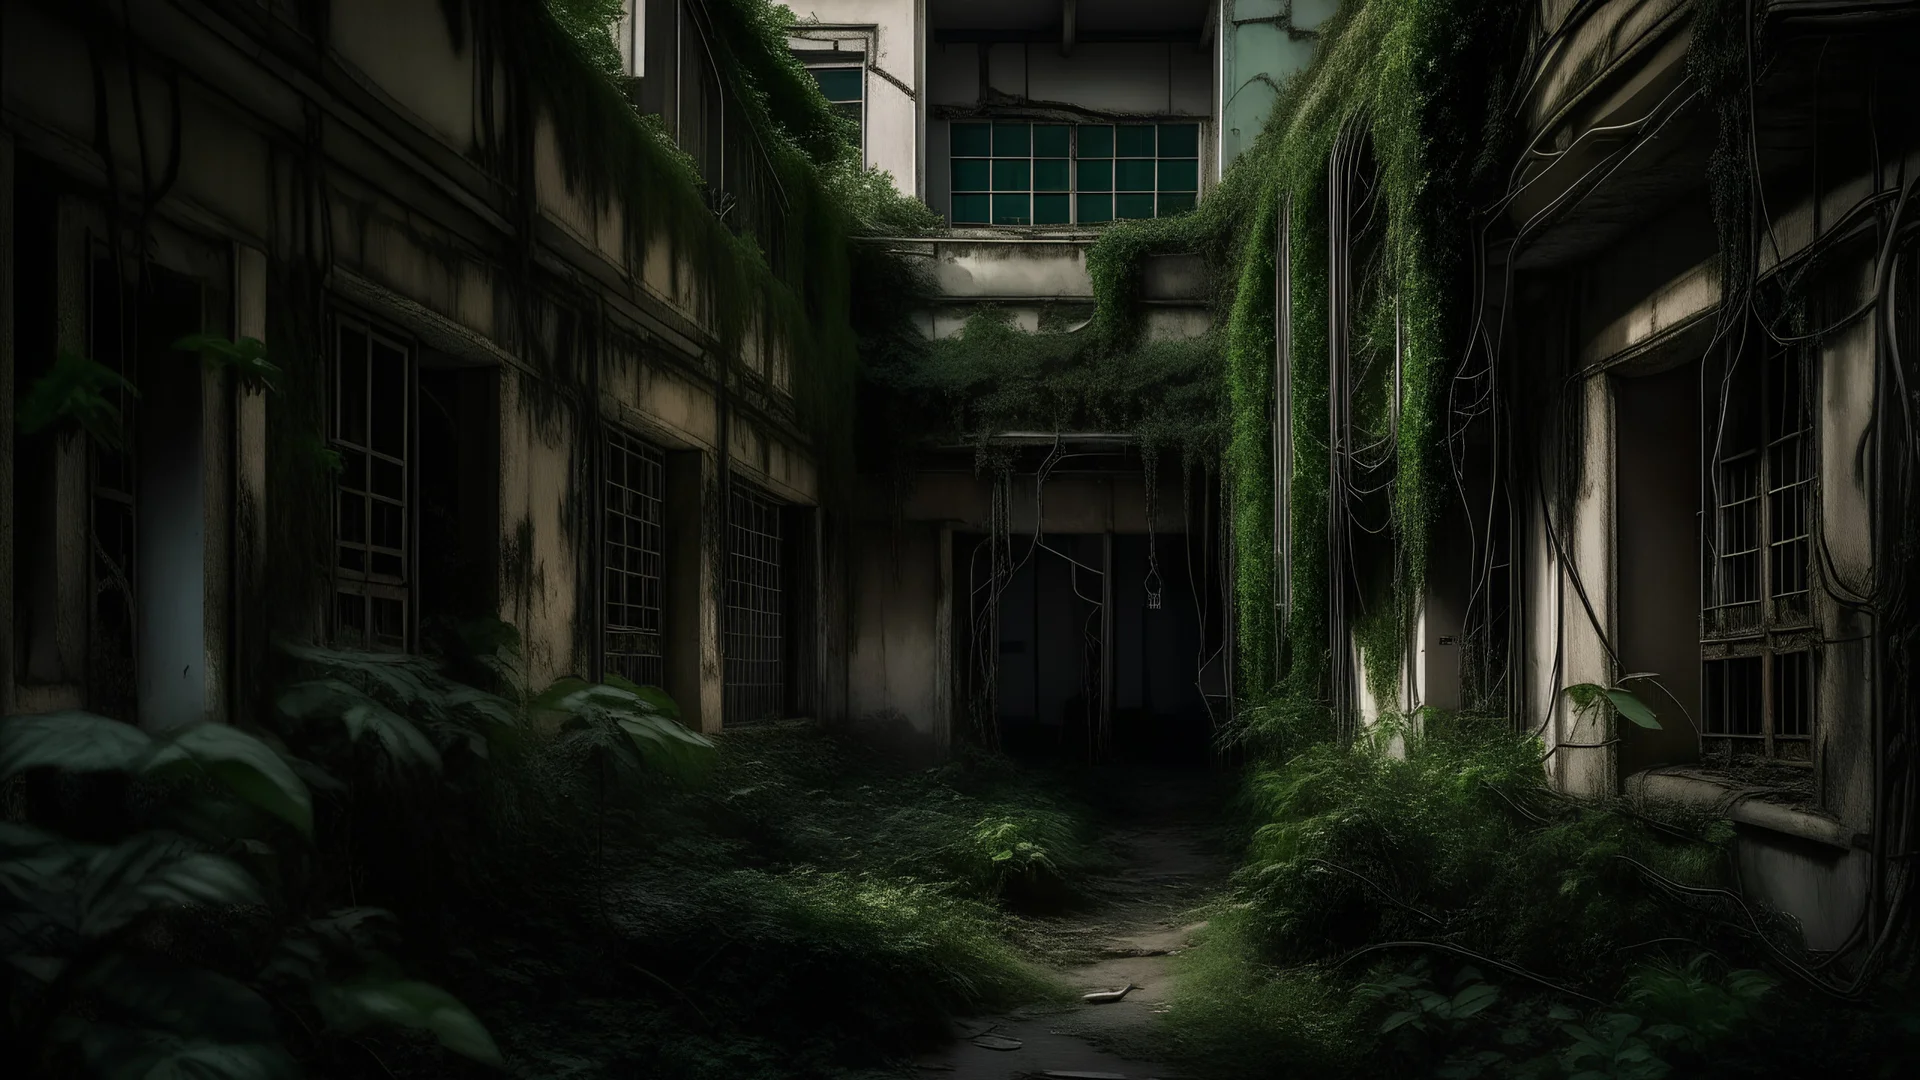 في أحد الأزقة المُظلمة، تقع مستشفى قديمة مهجورة تُعرف باسم "مستشفى الرعب". تُحيط بالمستشفى أسوارٌ عاليةٌ مُغطاةٌ بالنباتات المتسلقة، ونوافذها مُحطمةٌ، وبوابتها مُغلقةٌ بسلاسل صدئة